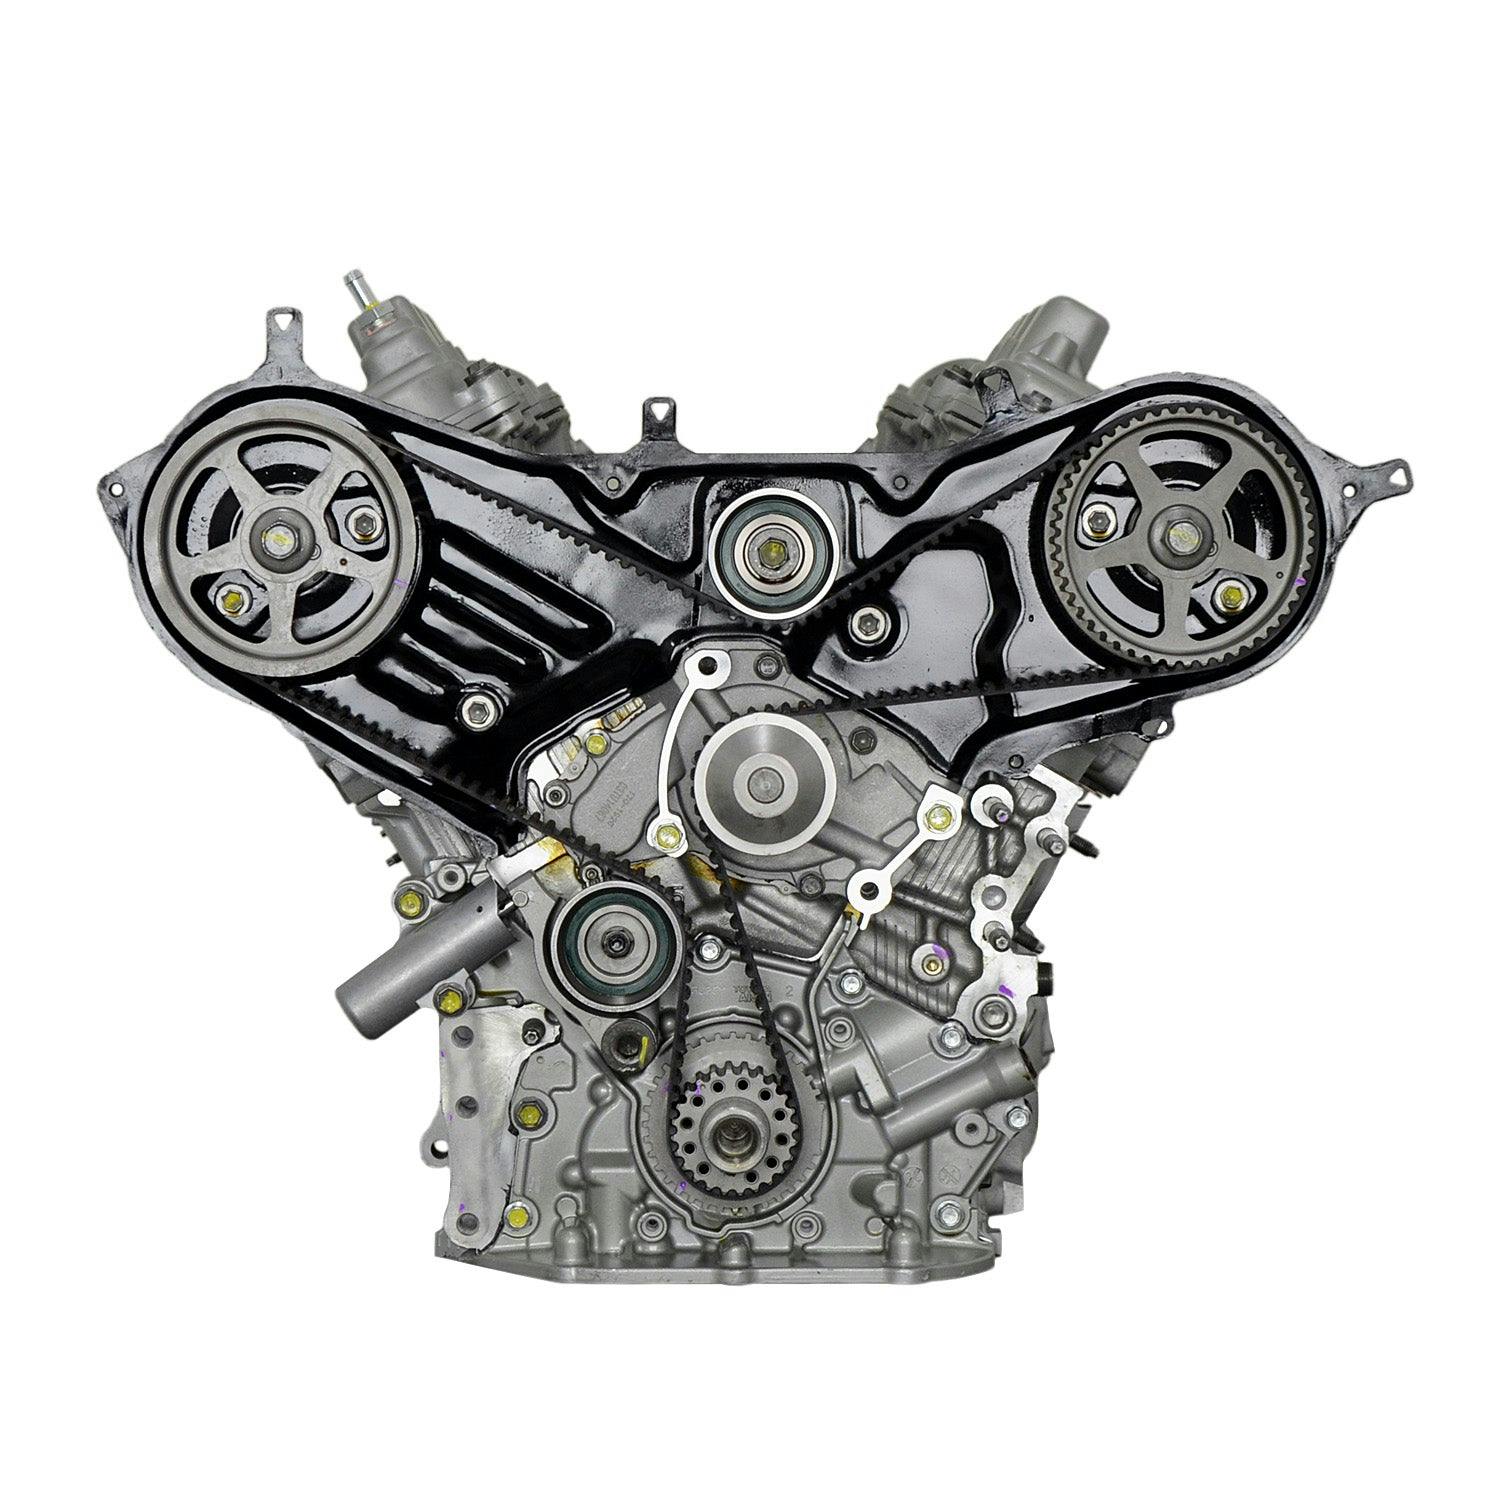 3L V6 Engine for 2001-2006 Lexus ES300/Toyota Camry, Highlander FWD